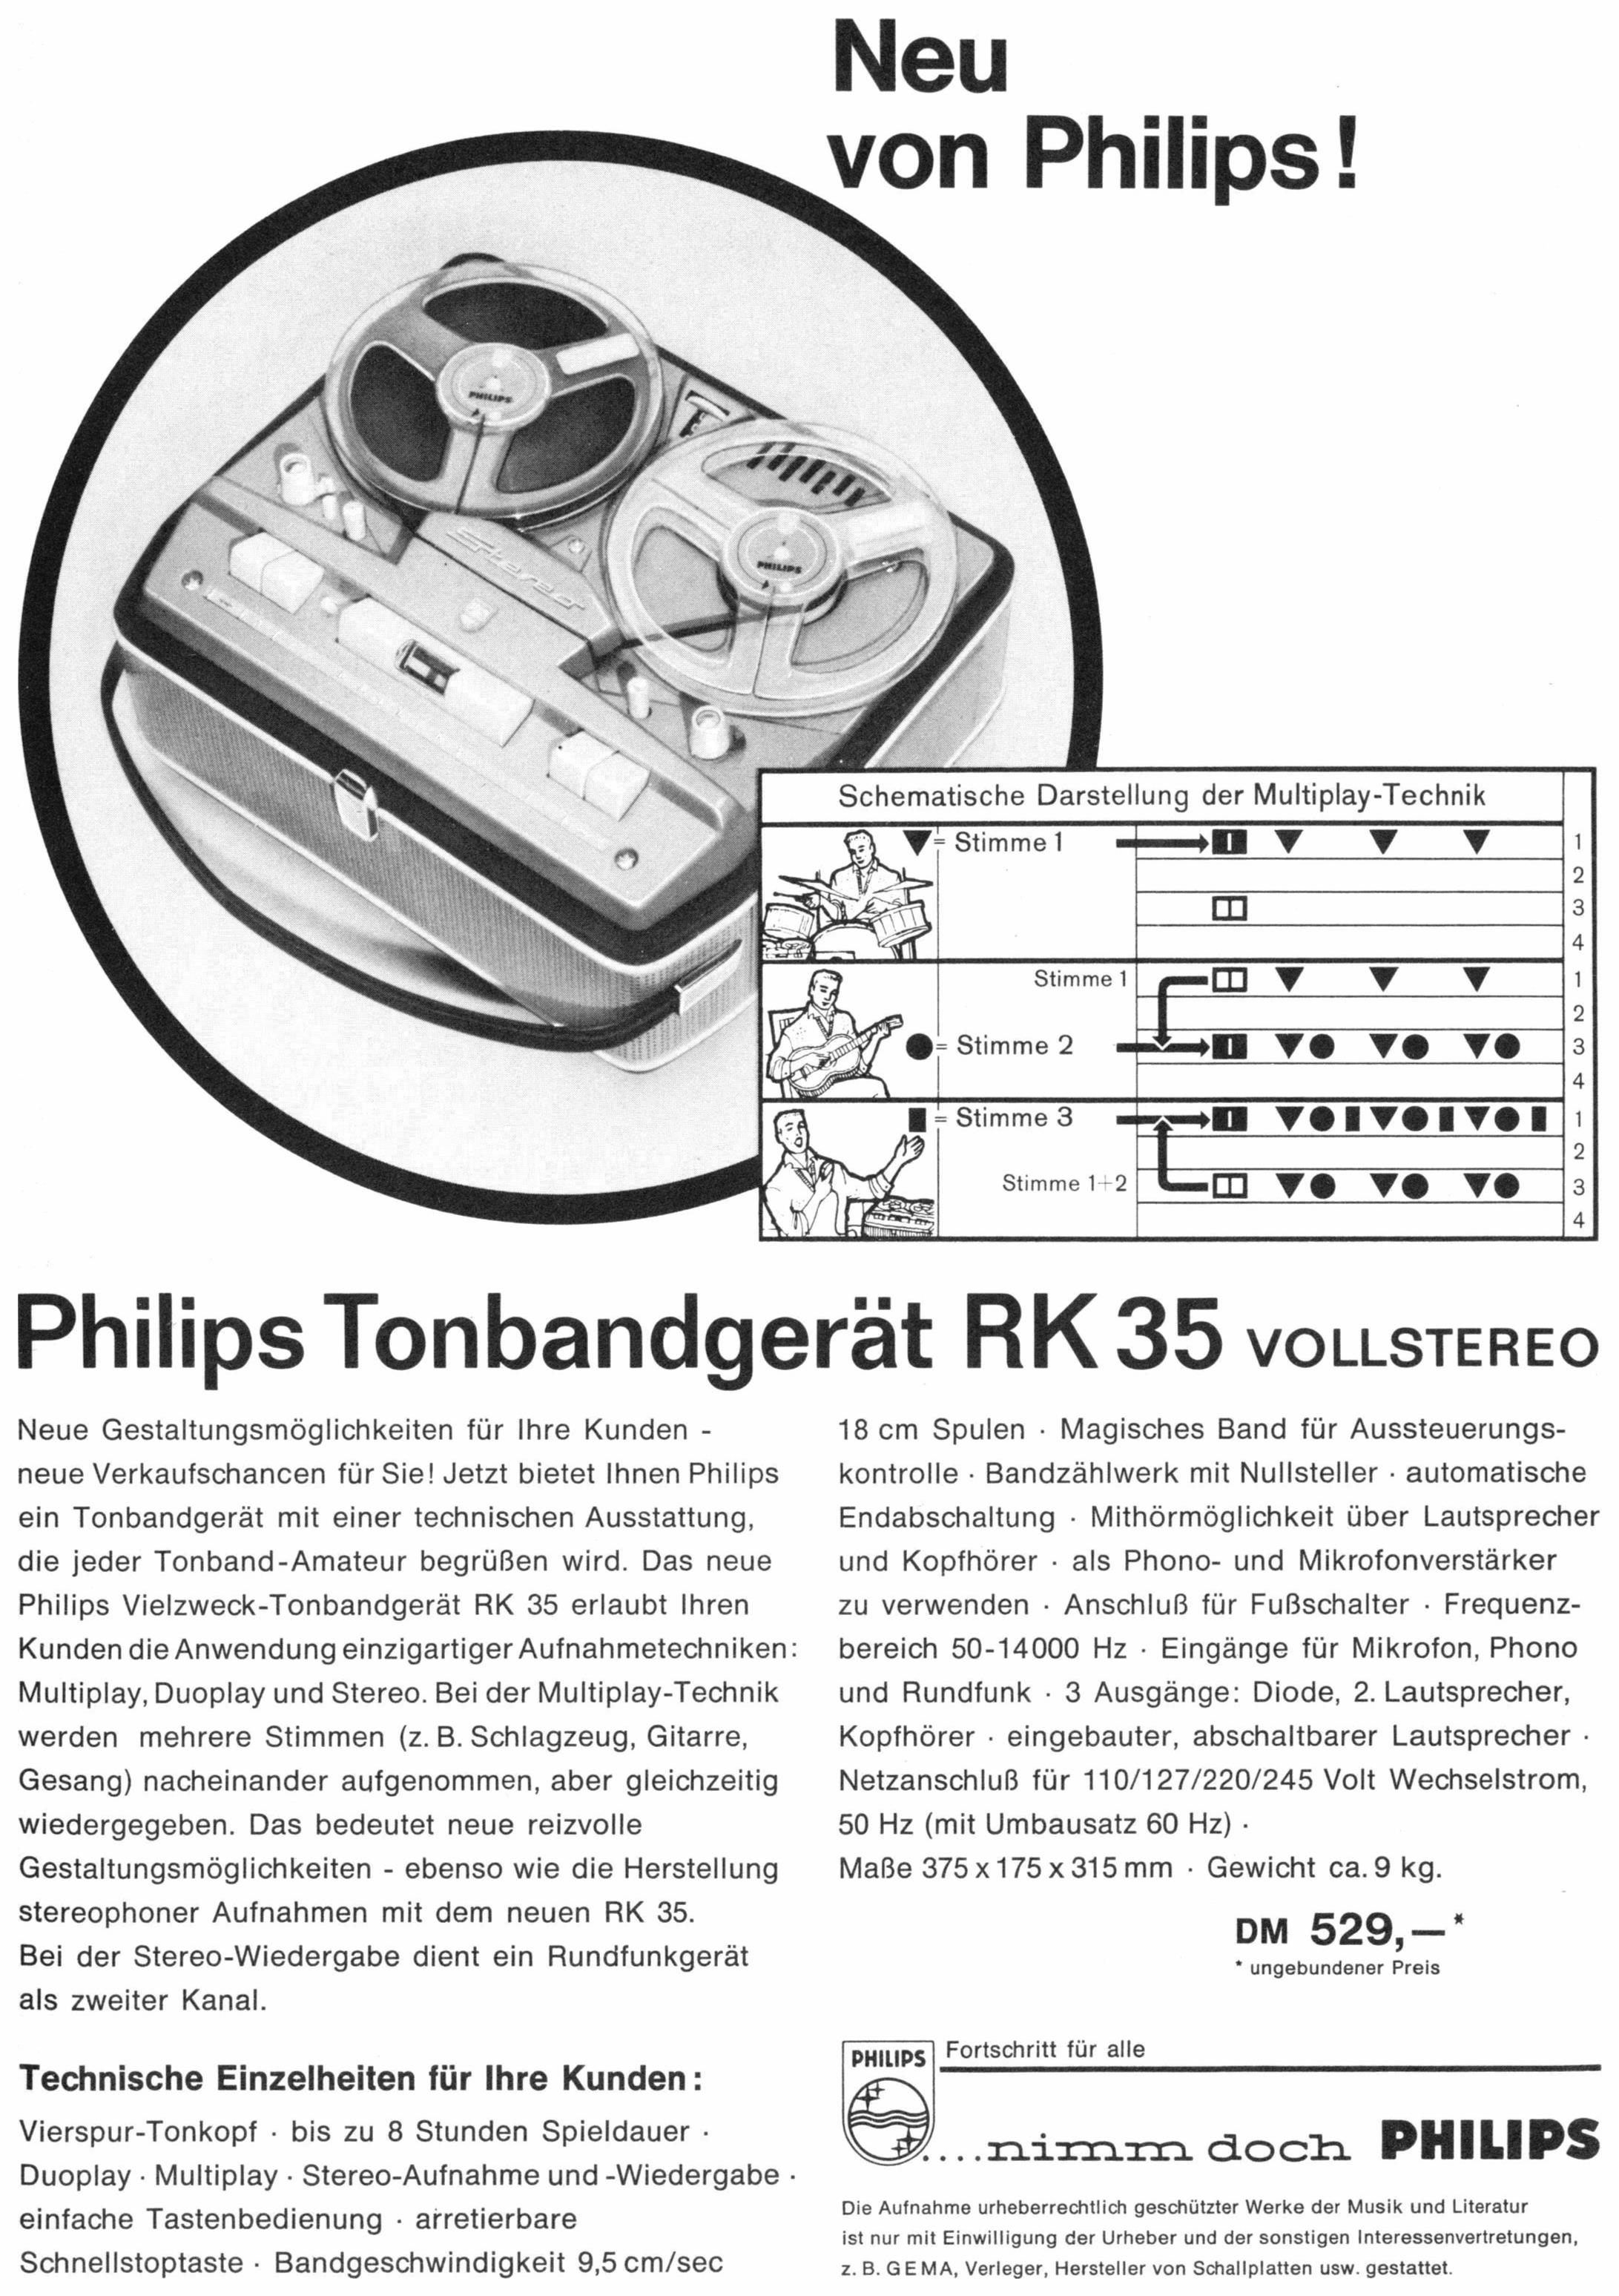 Philips 1961 021.jpg